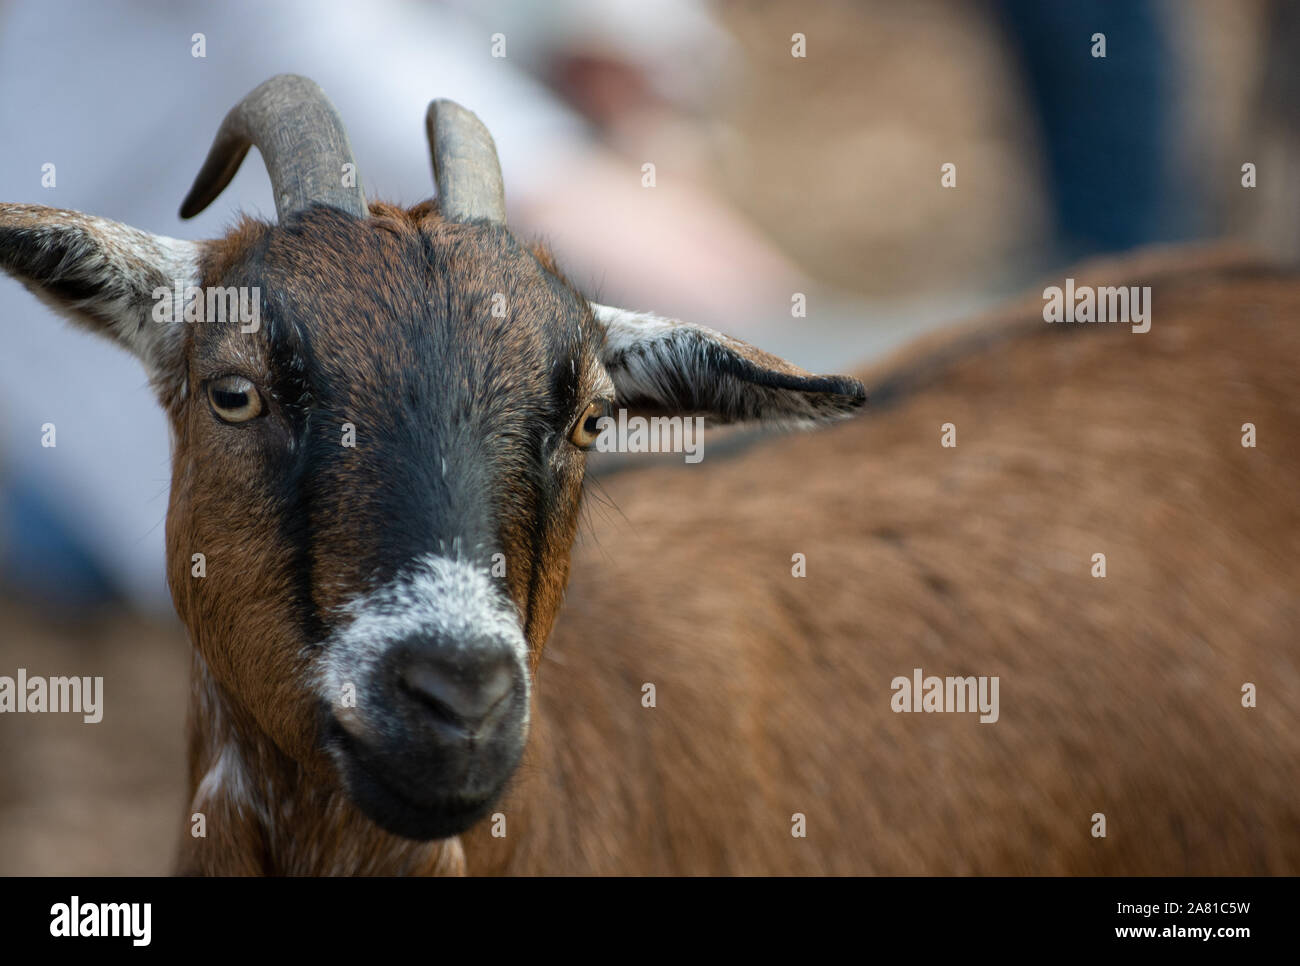 Ritratto di una capra marrone con lunghe corna Foto Stock